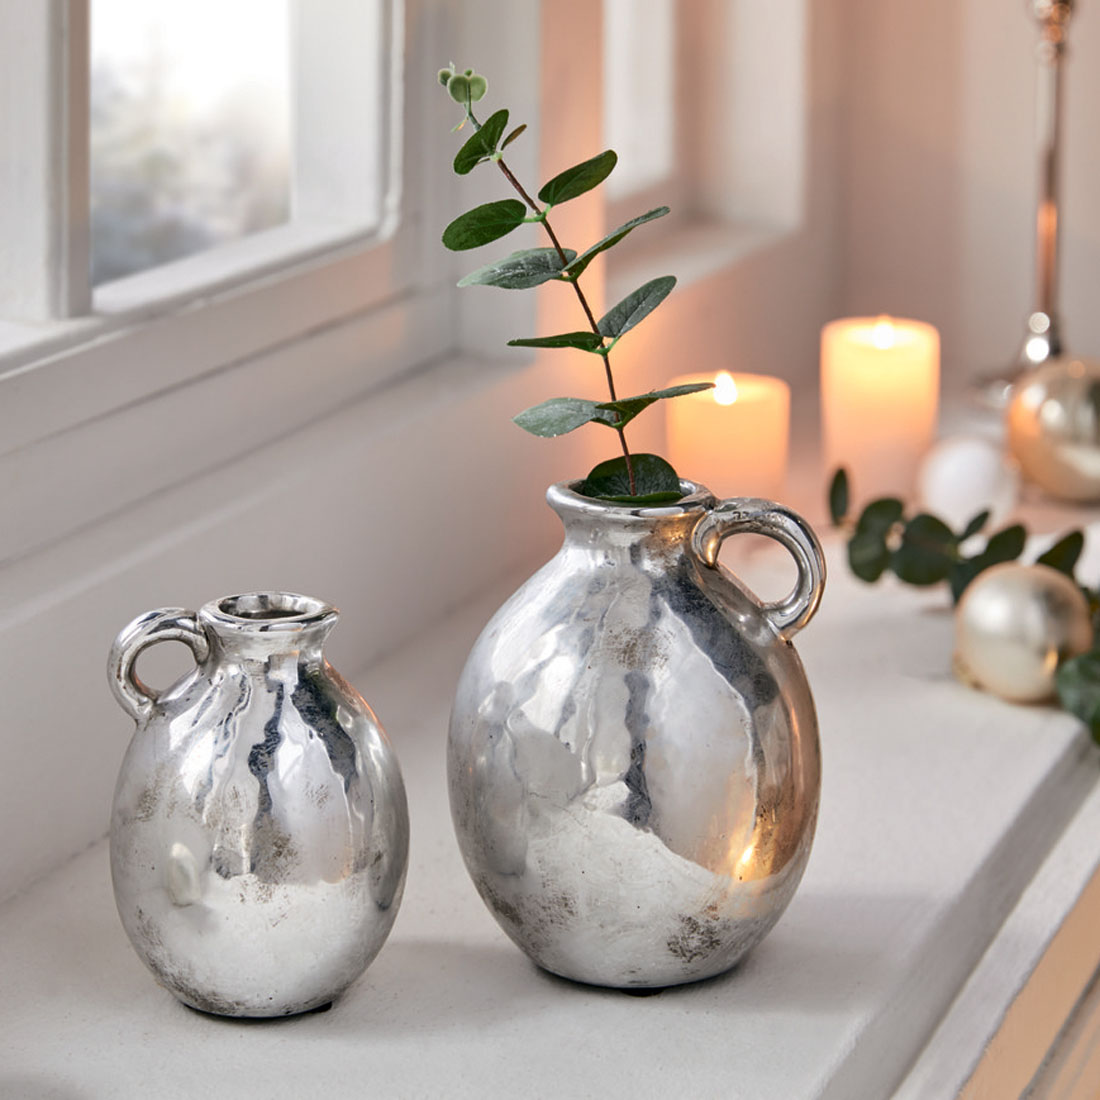 Декоративные вазы "Серебро антик", 2 штуки [07687], 